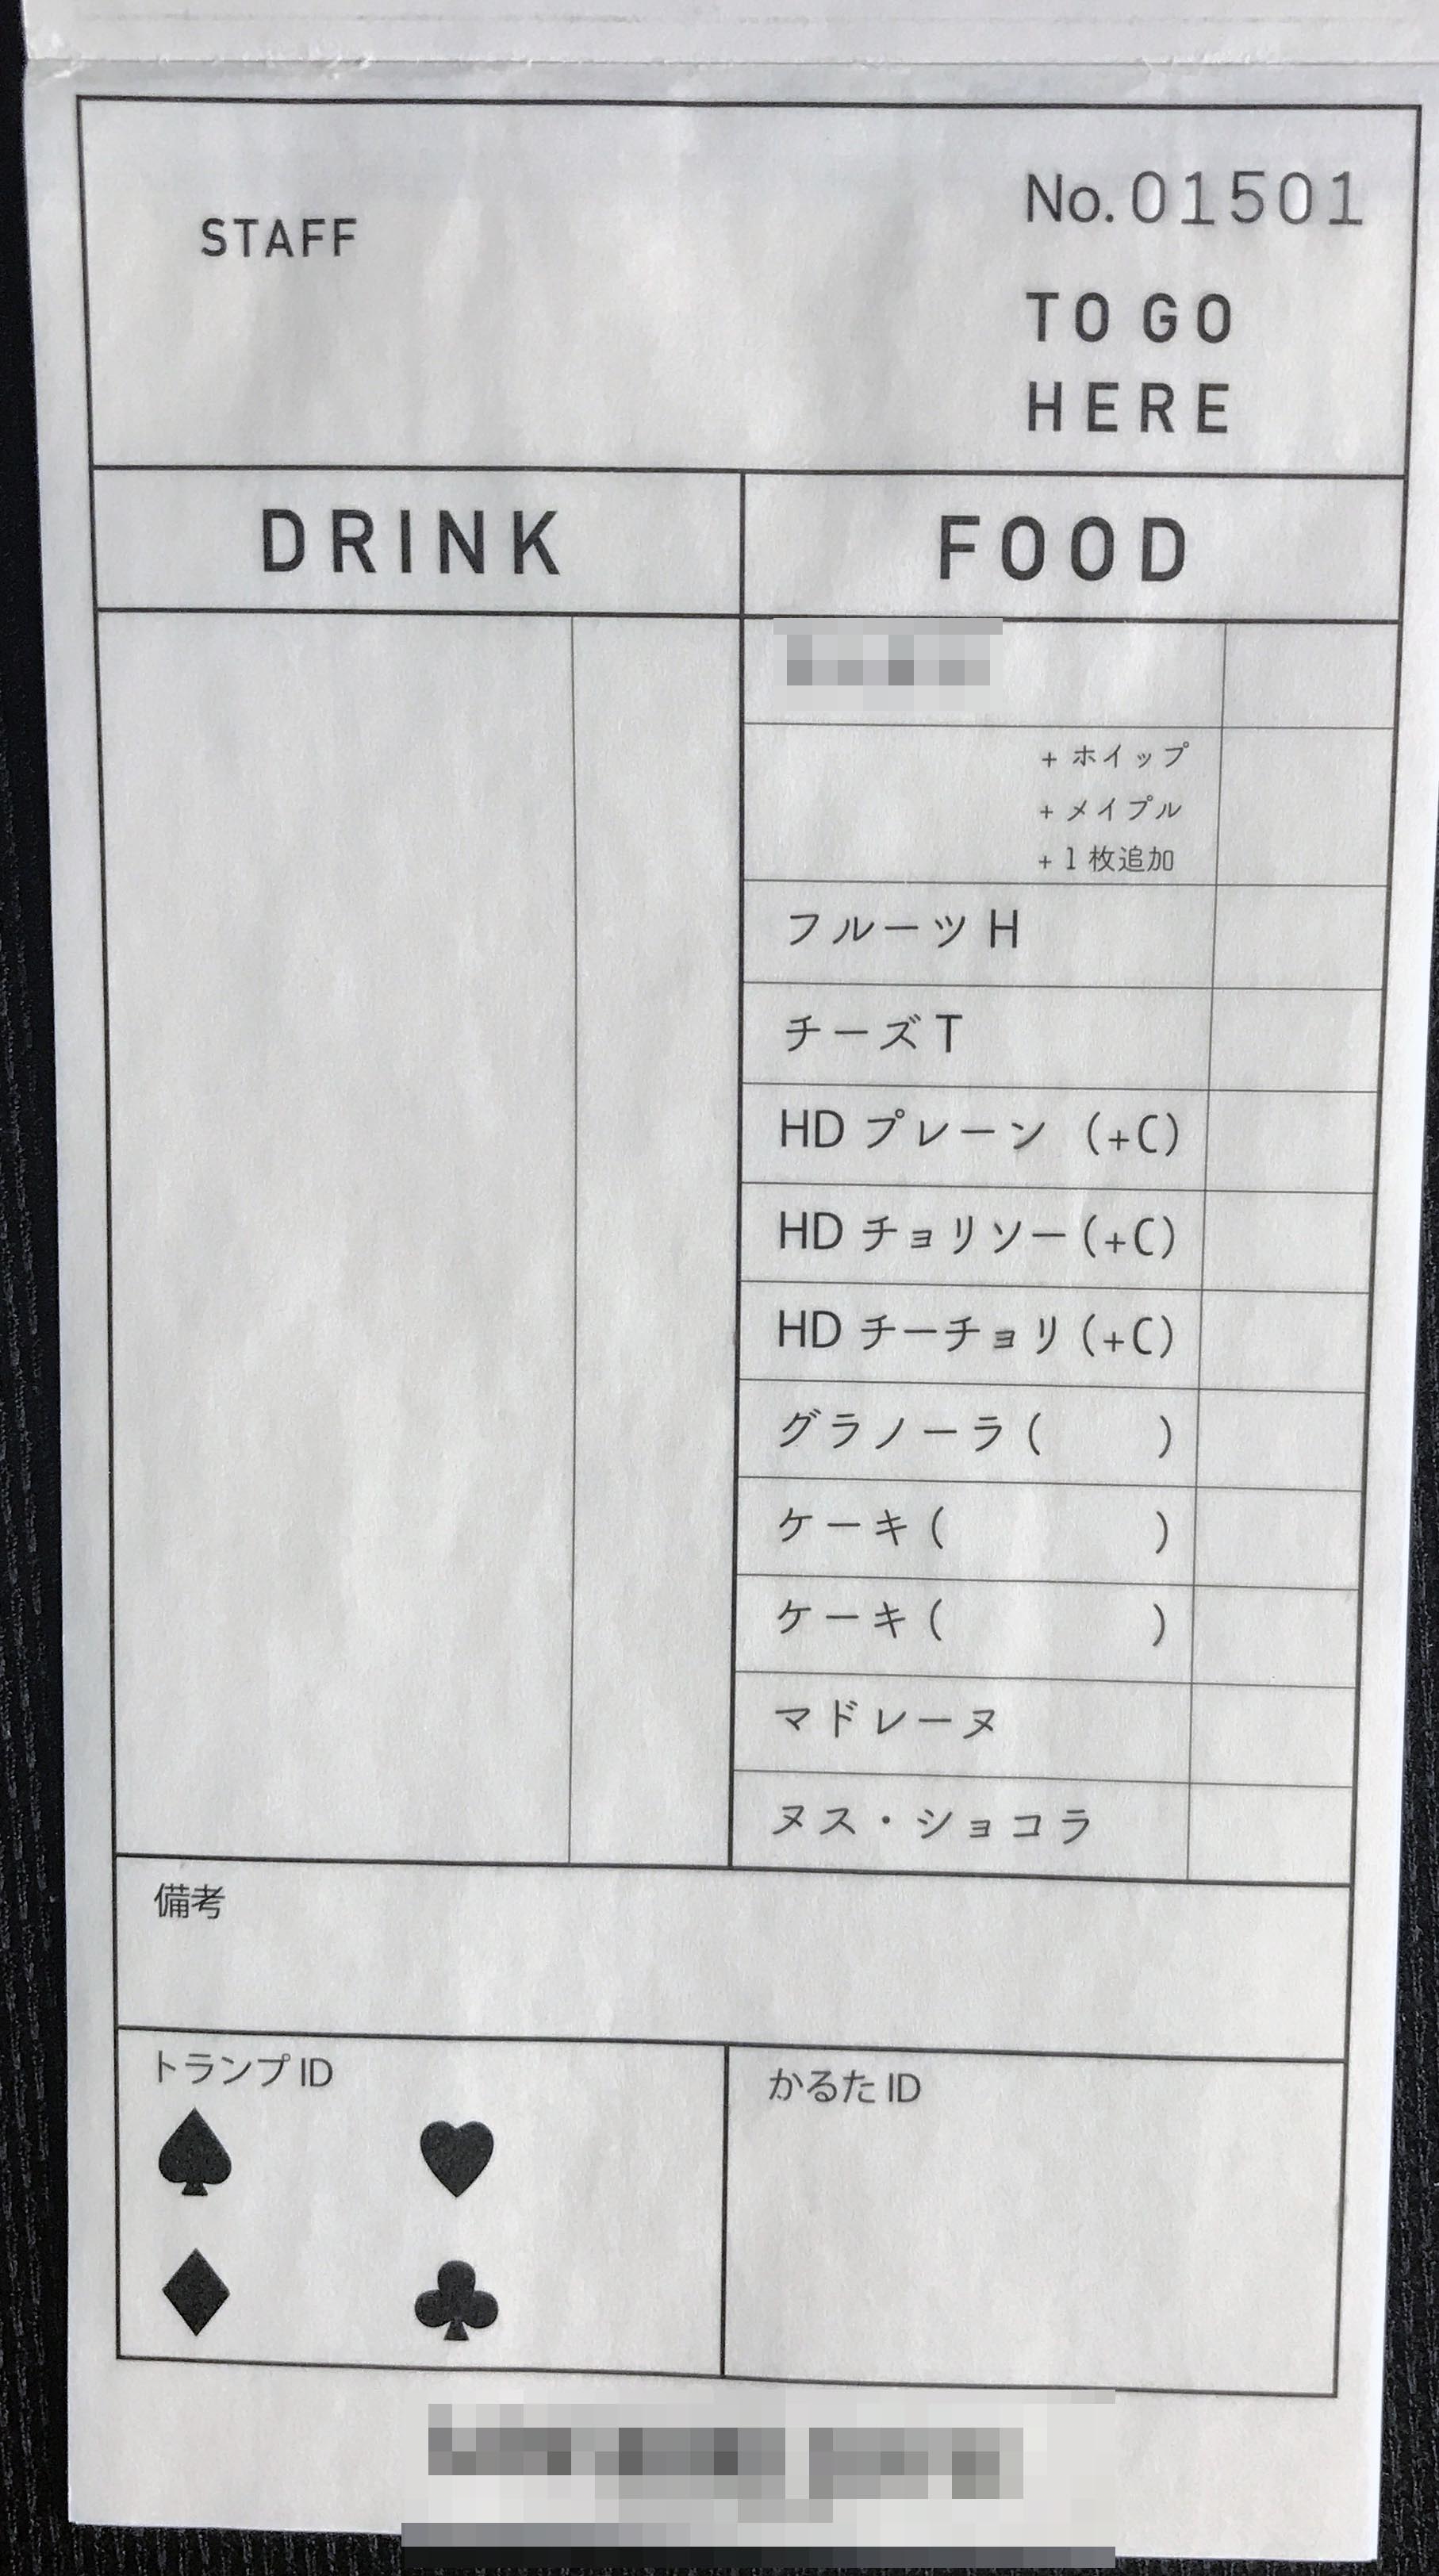 東京都　飲食店　オーダー票　(３枚複写)